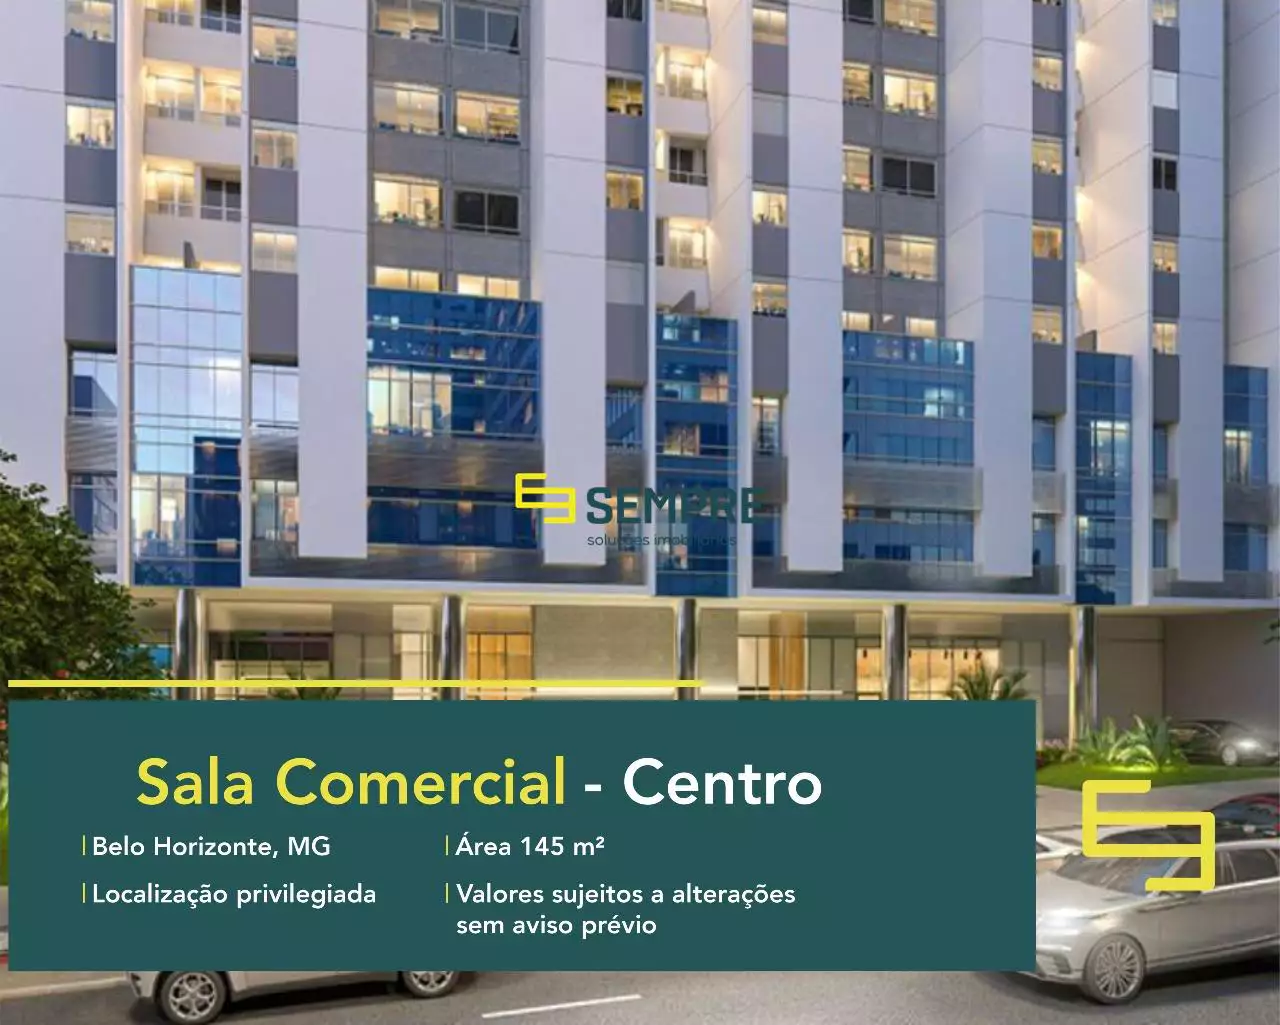 Sala comercial no Edifício Metrópolis em BH - Centro, em excelente localização. O ponto comercial conta com área de 145,94 m².